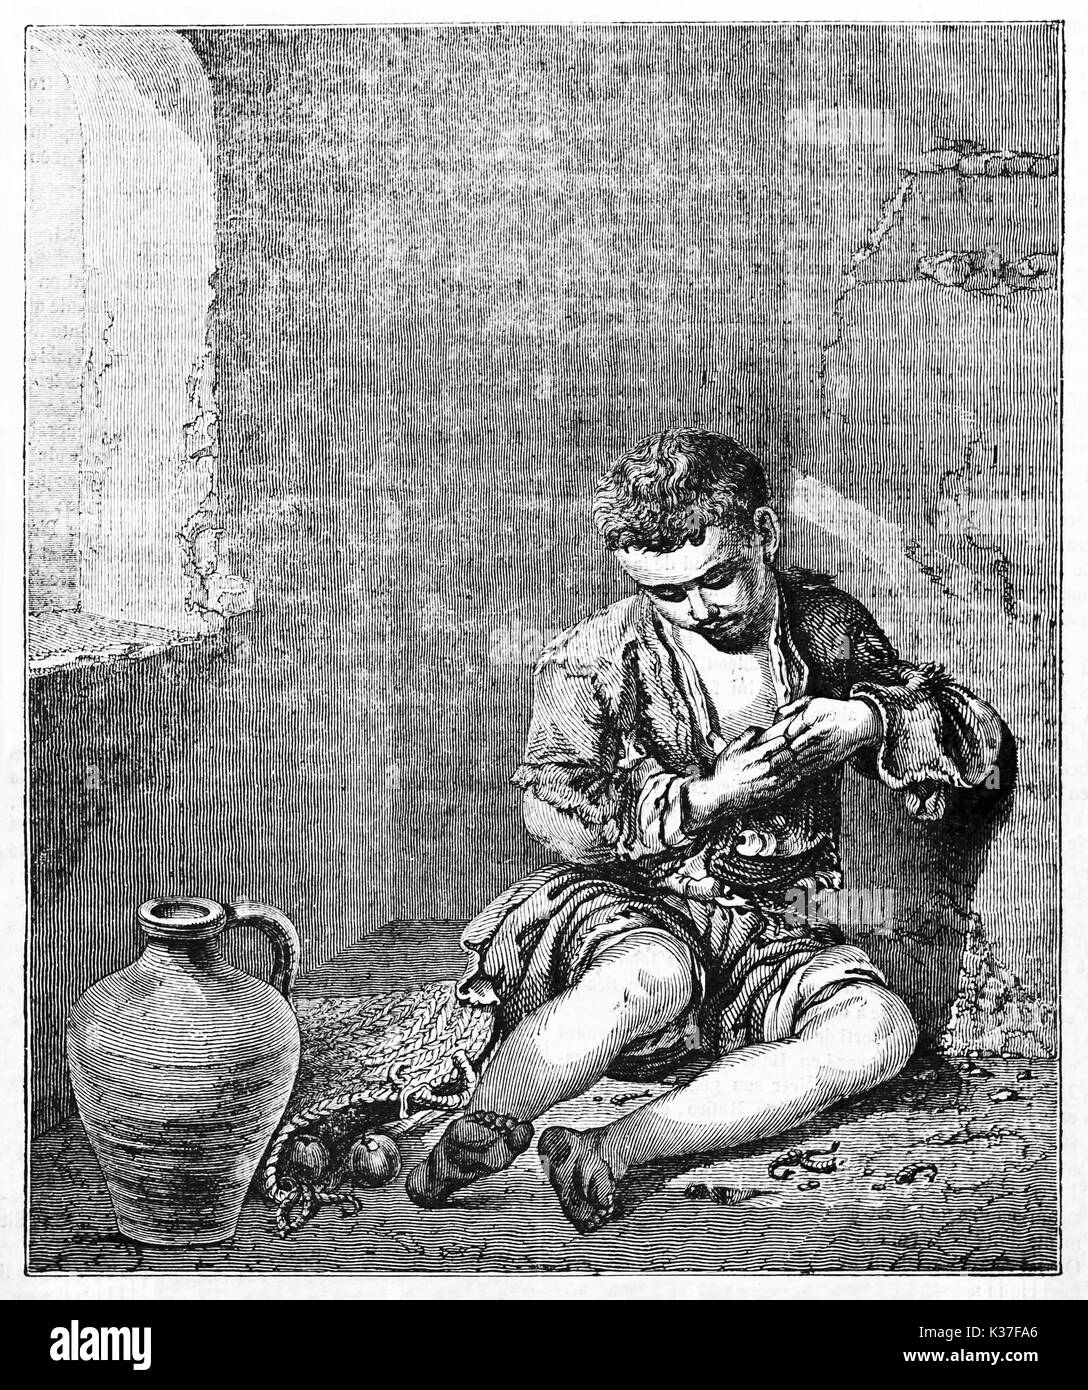 Ancienne gravée la reproduction de la jeune mendiant, peinture conservés dans le musée du Louvre, Paris. Après Murillo, publié le Magasin Pittoresque, Paris, 1834 Banque D'Images